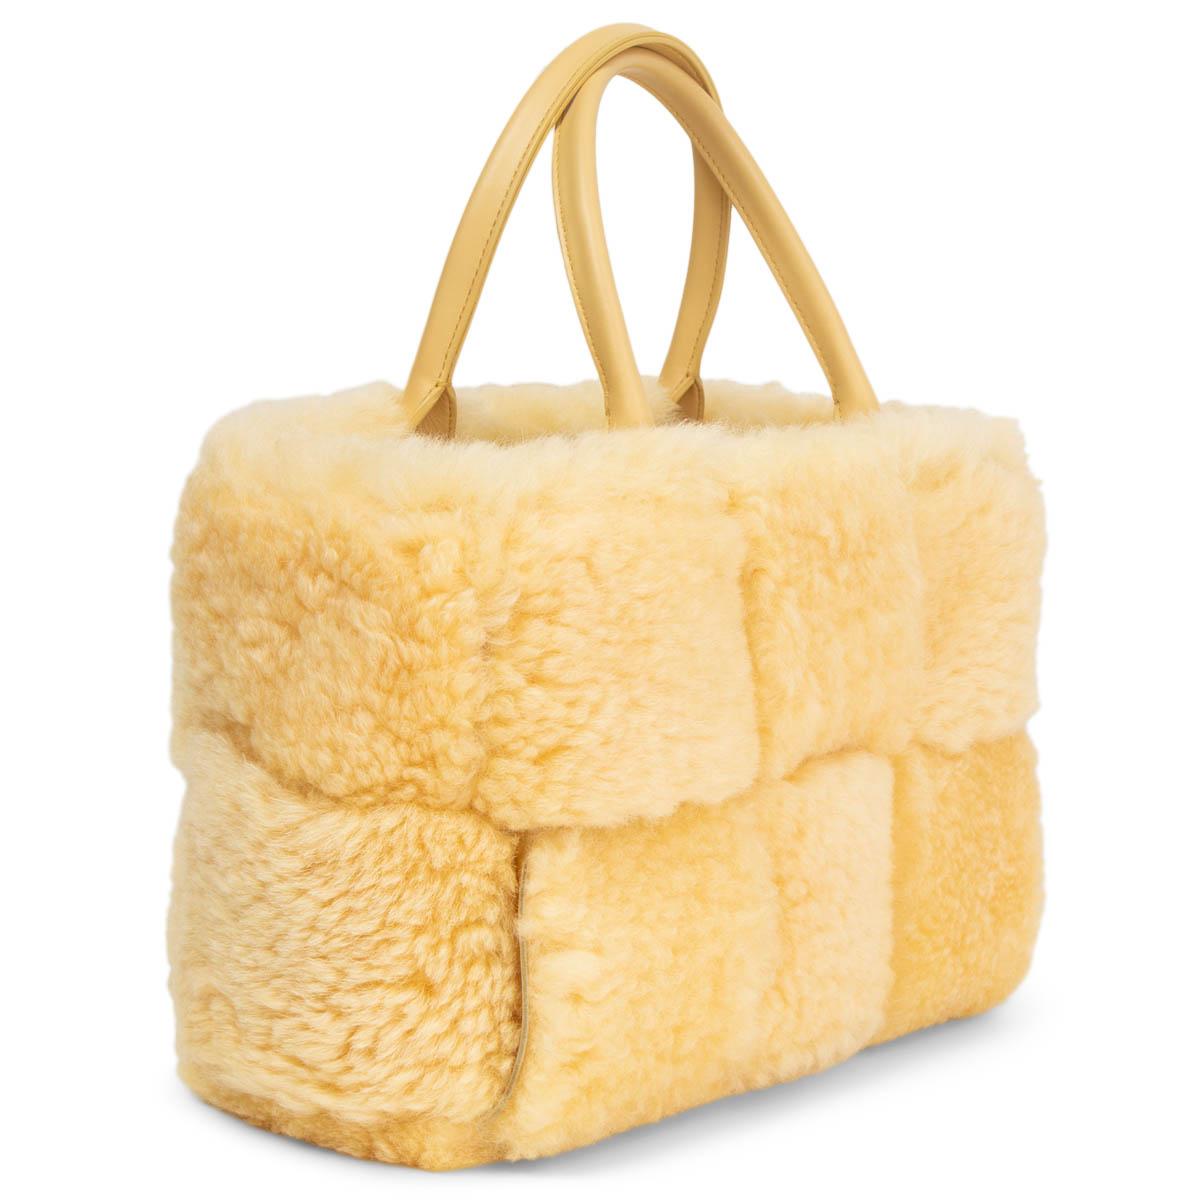 100% authentische Bottega Veneta Small Arco Intrecciato Tote Bag in Teddy (Vanille) aus flauschigem Shearling, handgewebt in einem aufgeblasenen Intrecciato-Muster. Mit farblich abgestimmten Ledergriffen und einer abnehmbaren Reißverschlusstasche.